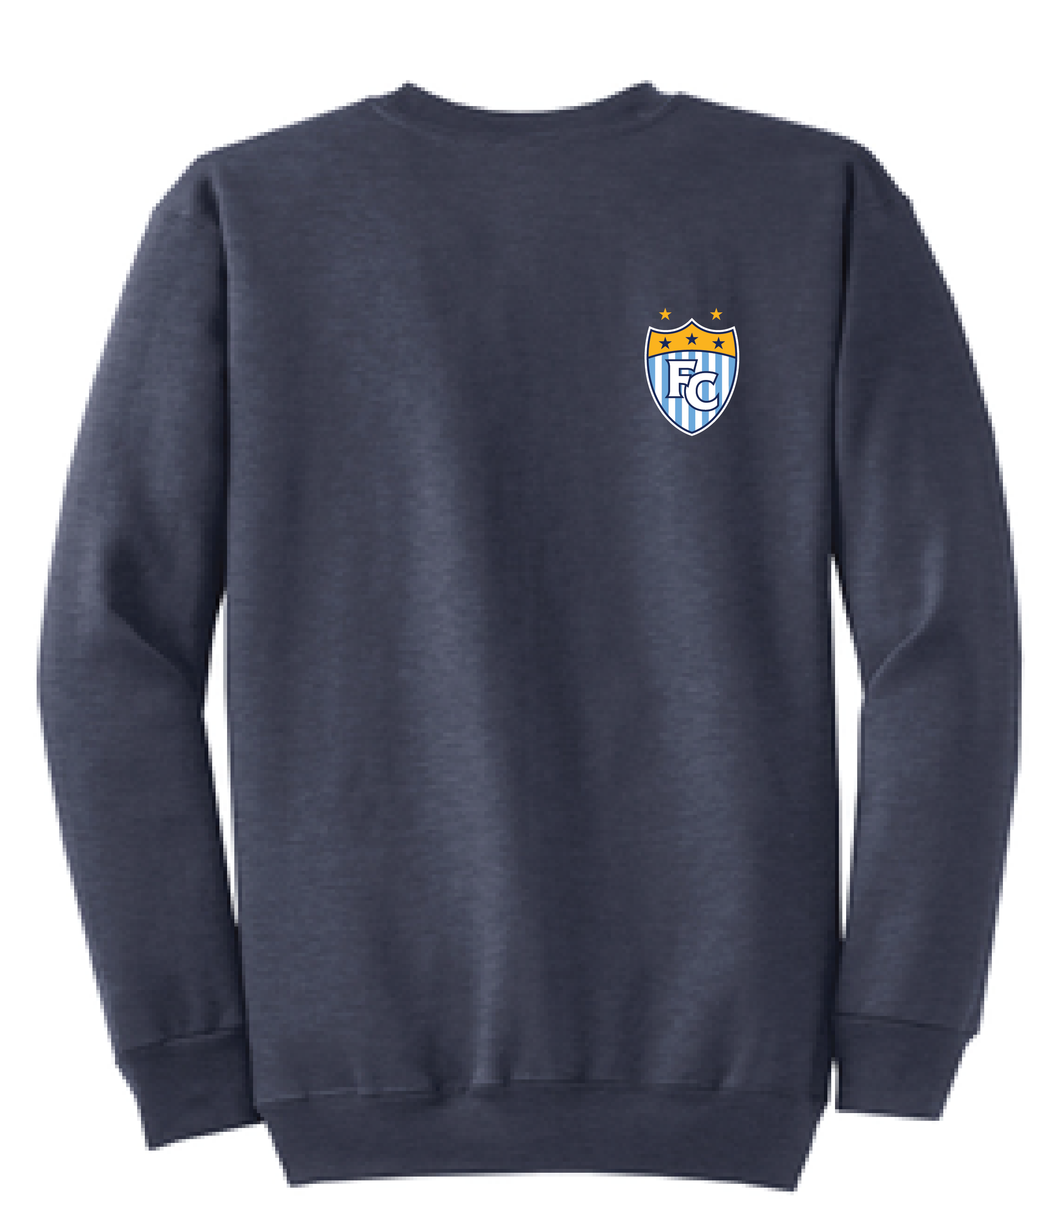 Fleece Crewneck Sweatshirt (FC Soccer Crest) / Navy / First Colonial Girls Soccer